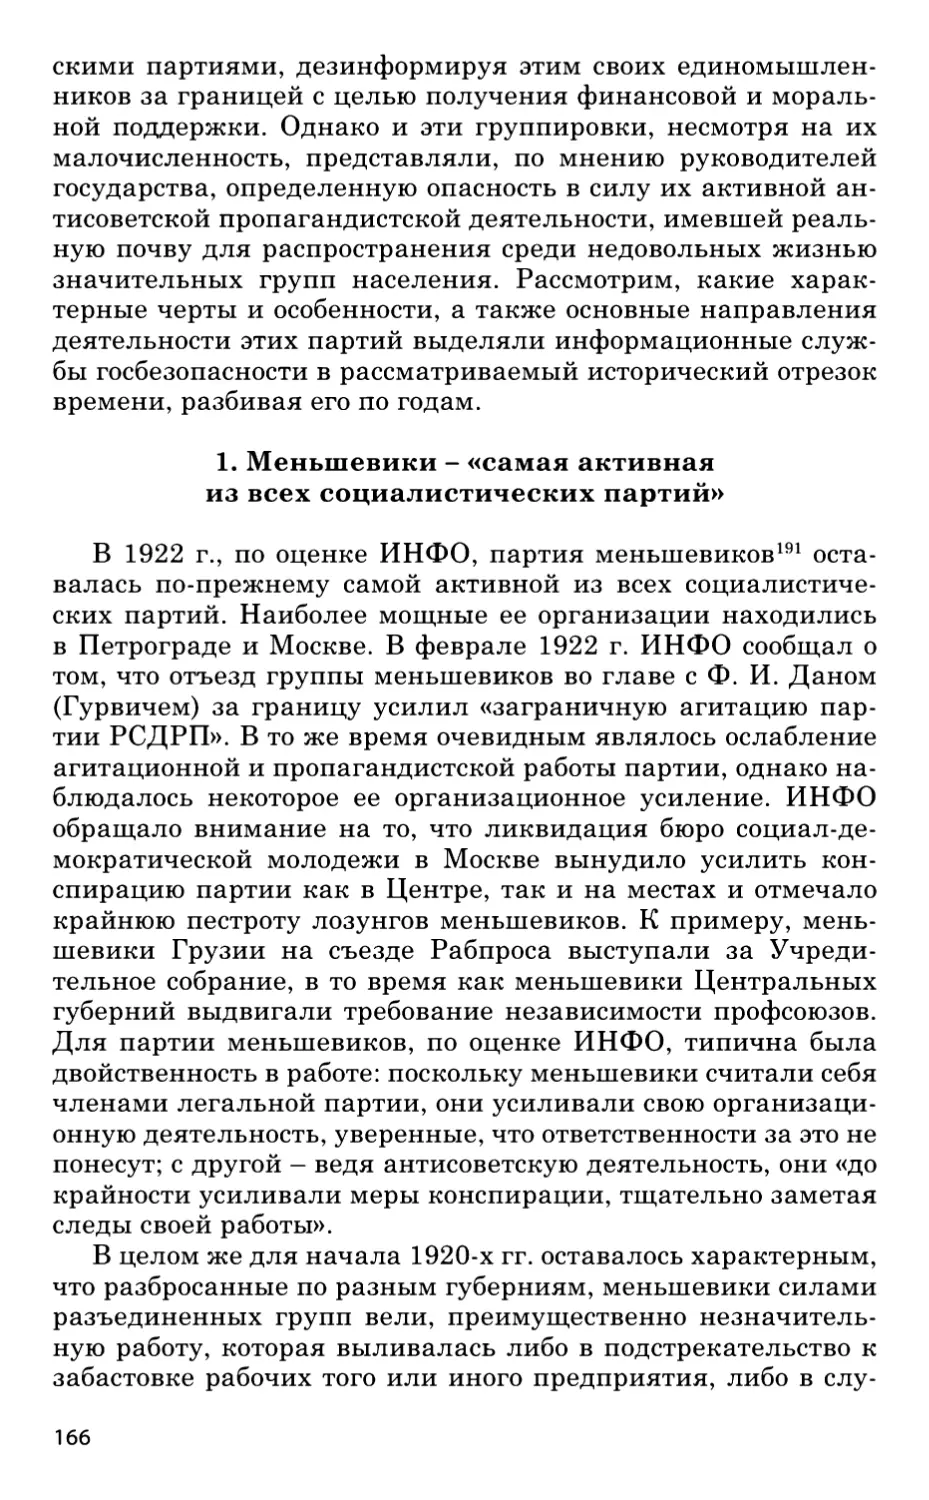 1. Меньшевики — «самая активная из всех социалистических партий»